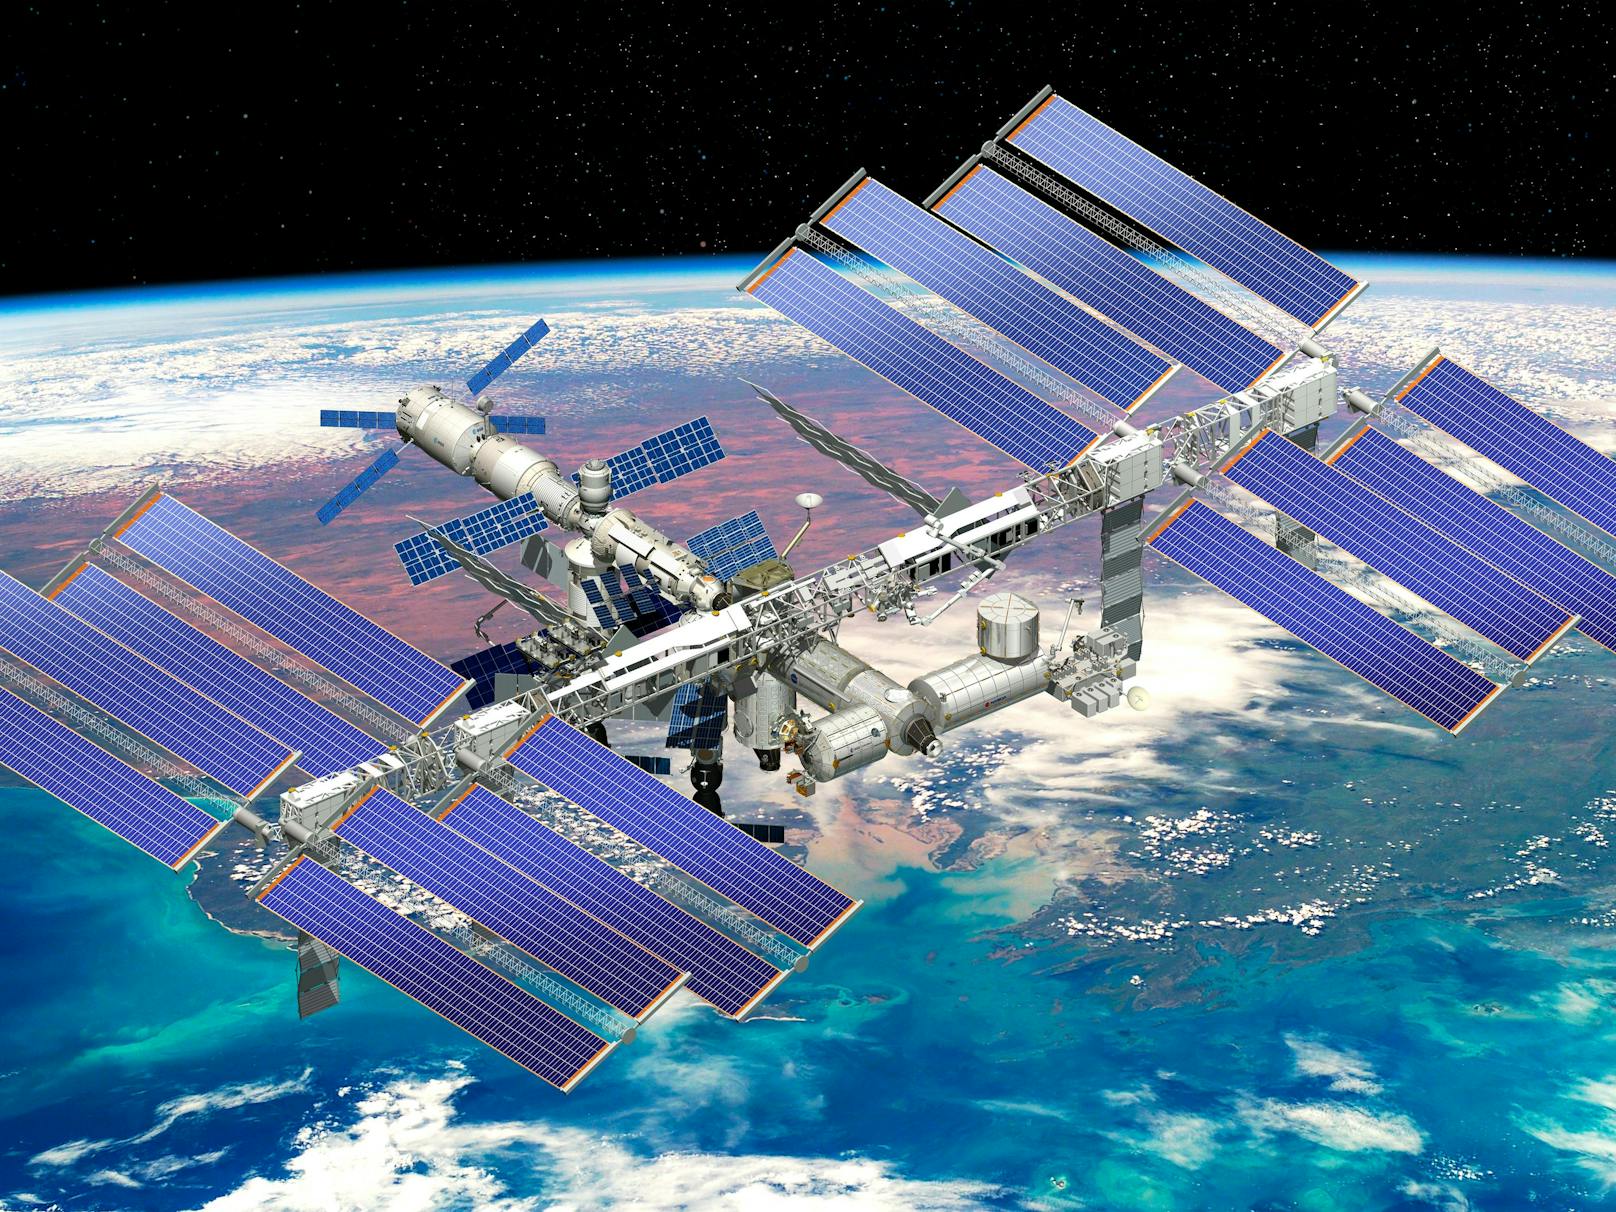 Nach Drohungen Russlands sucht die US-Raumfahrtbehörde Nasa derzeit Wege, wie sie die Internationale Raumstation ISS ohne russische Hilfe betreiben kann.